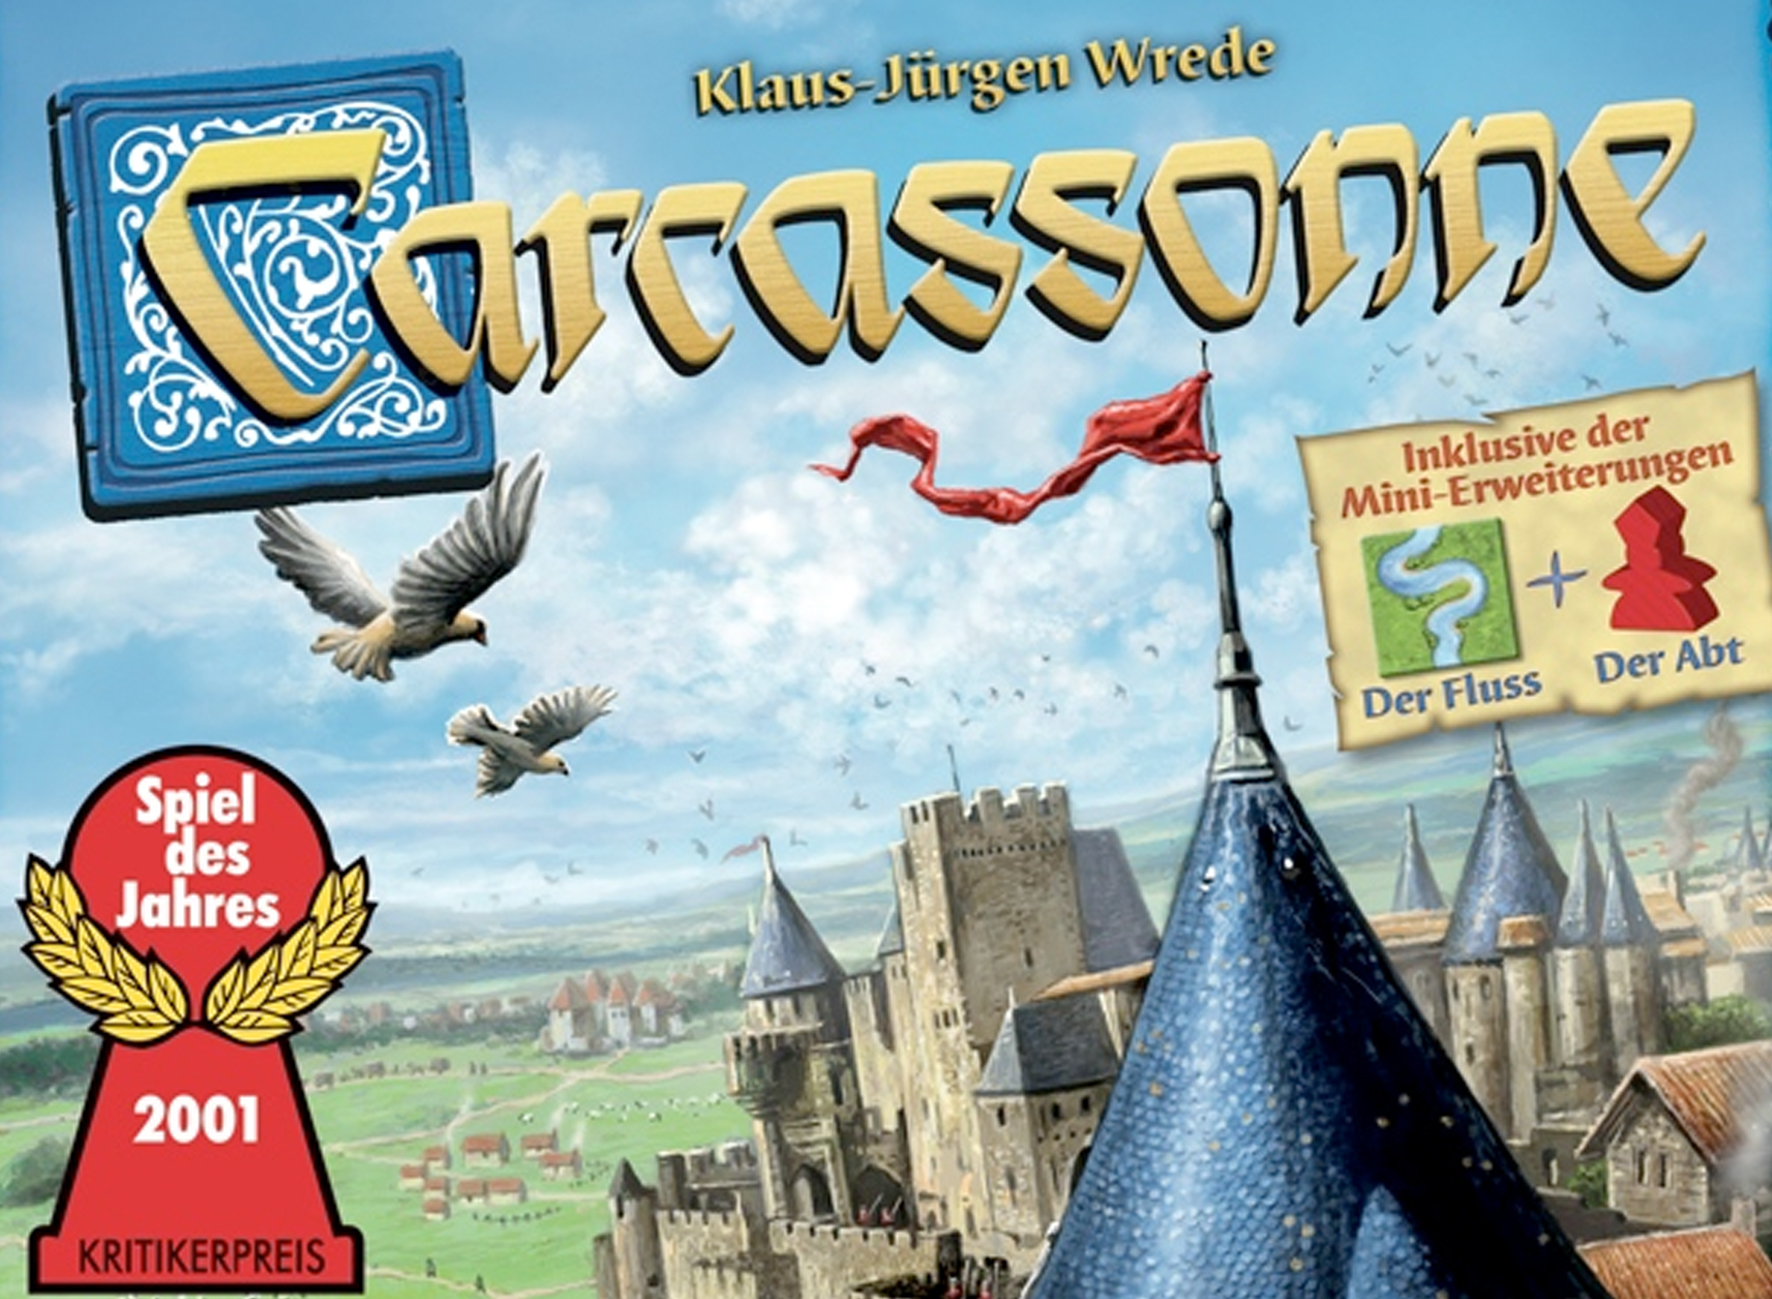 Spiel Carcassonne